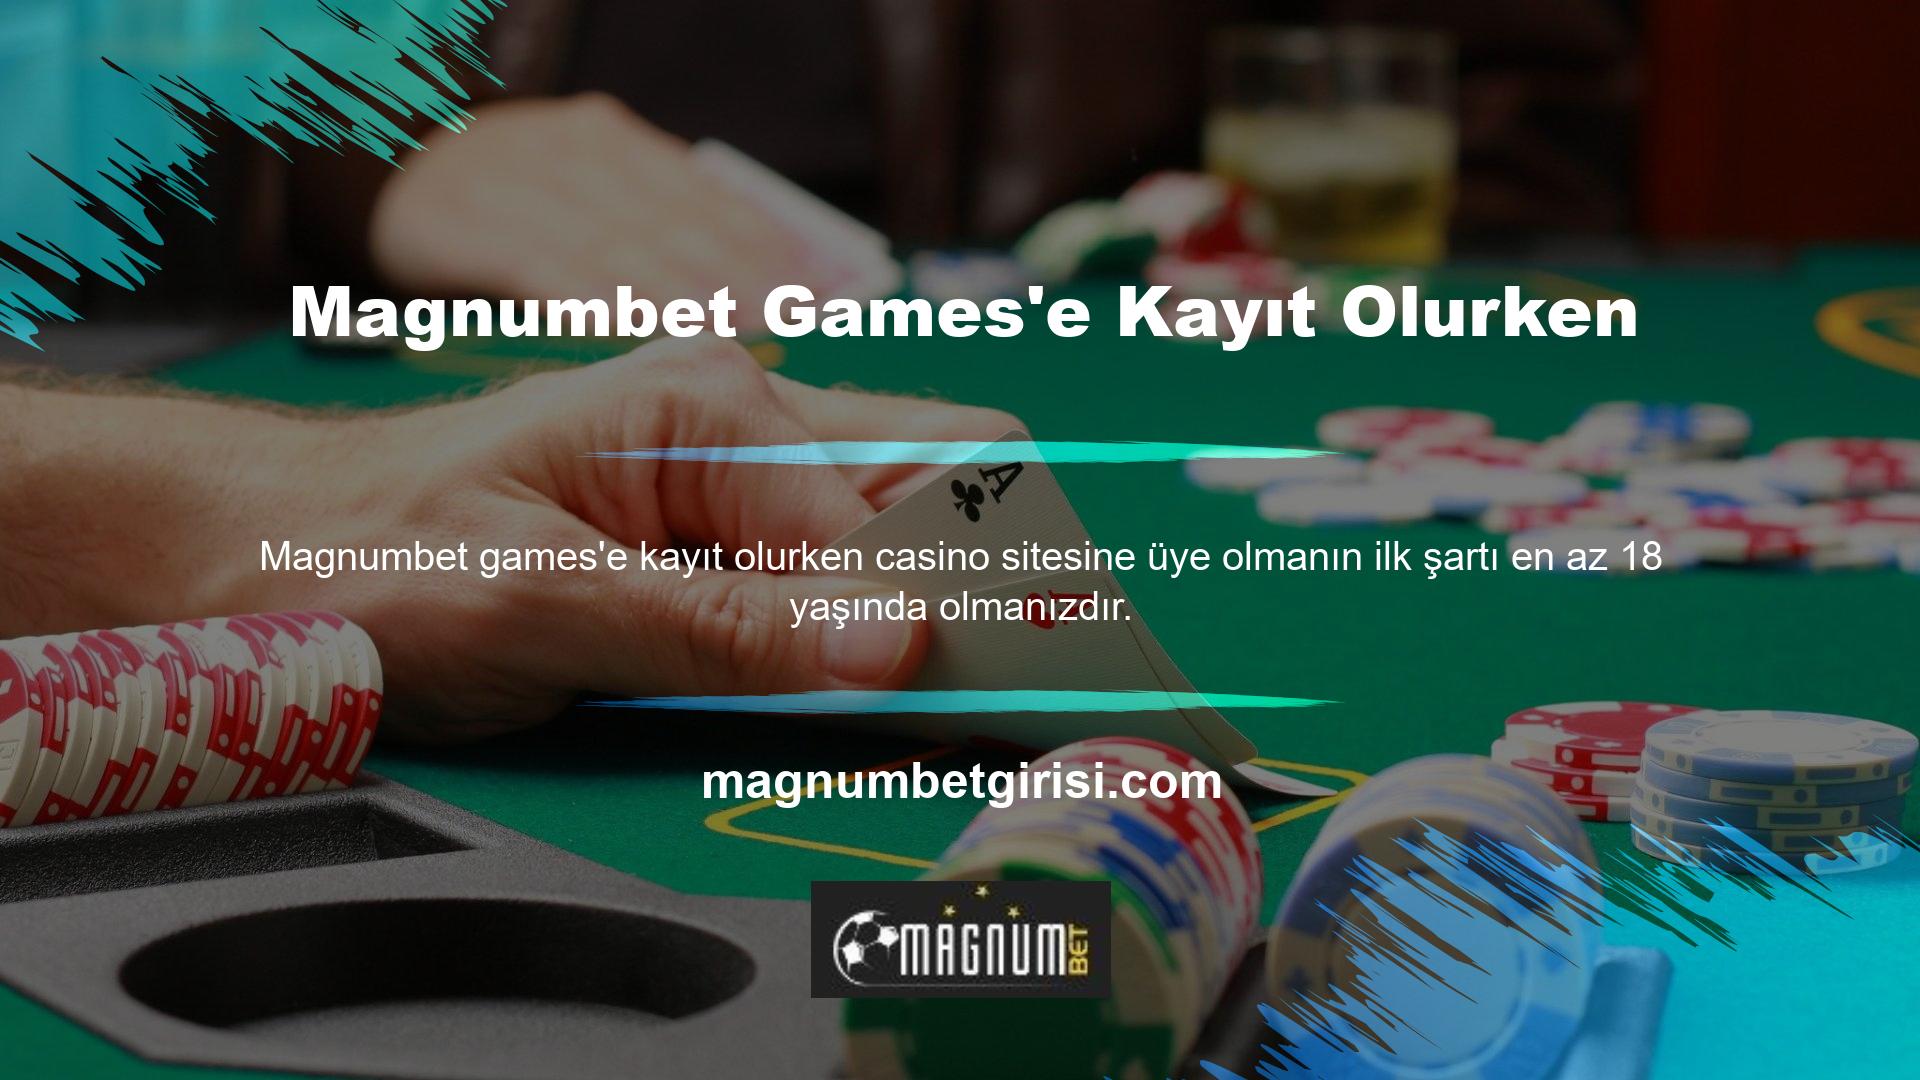 Magnumbet Online Casino web sitesine kayıt olurken, kayıt sırasında sağladığınız kişisel bilgilerin doğru olduğundan emin olmanız önemlidir